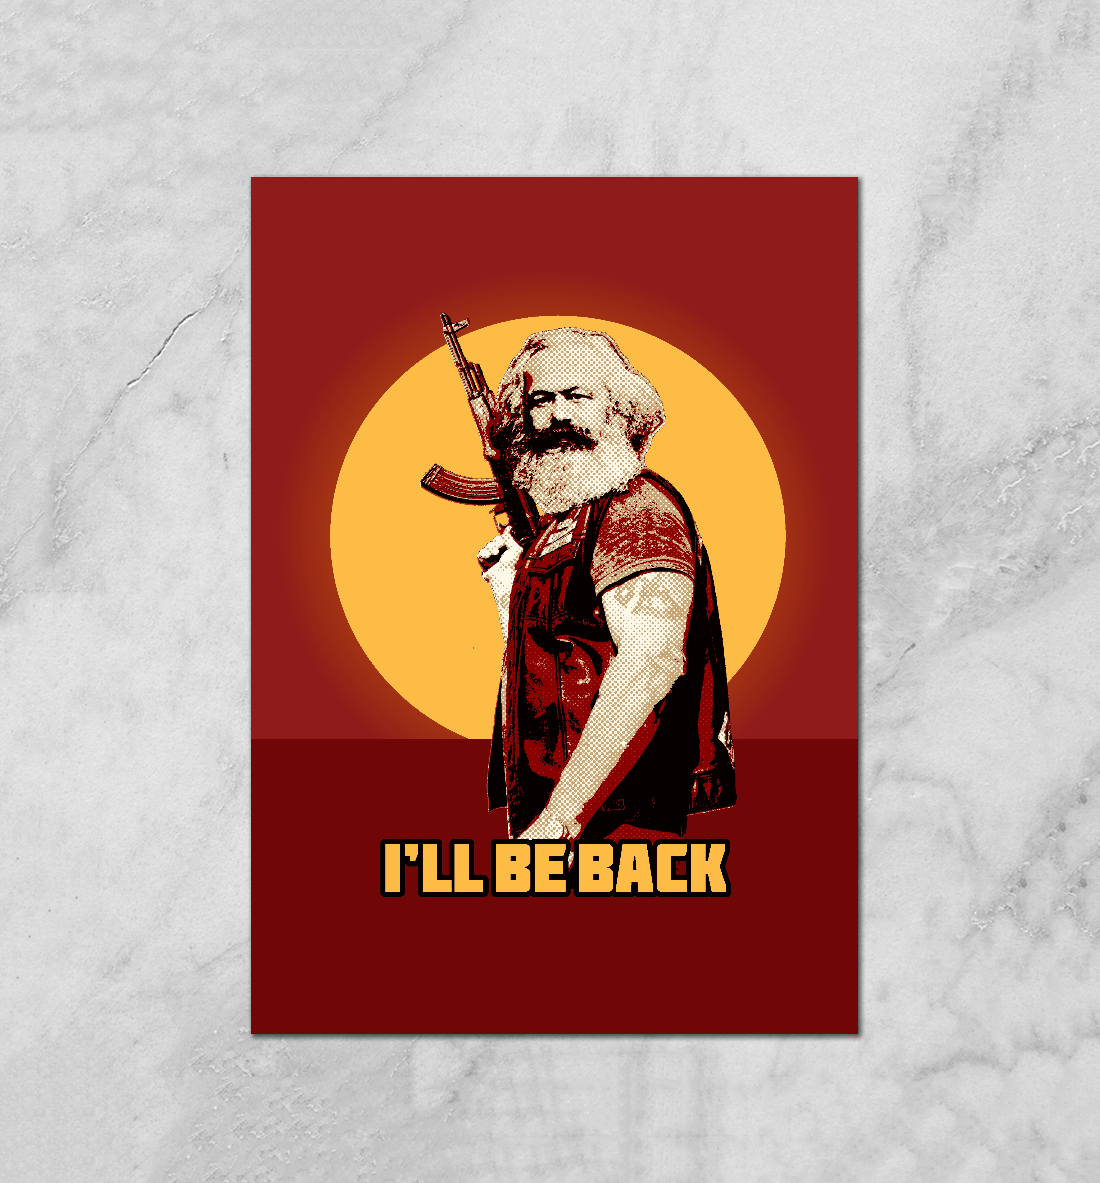 L am back. Ленин i ll be back. Маркс i'll be back плакат. I ll be back Постер.